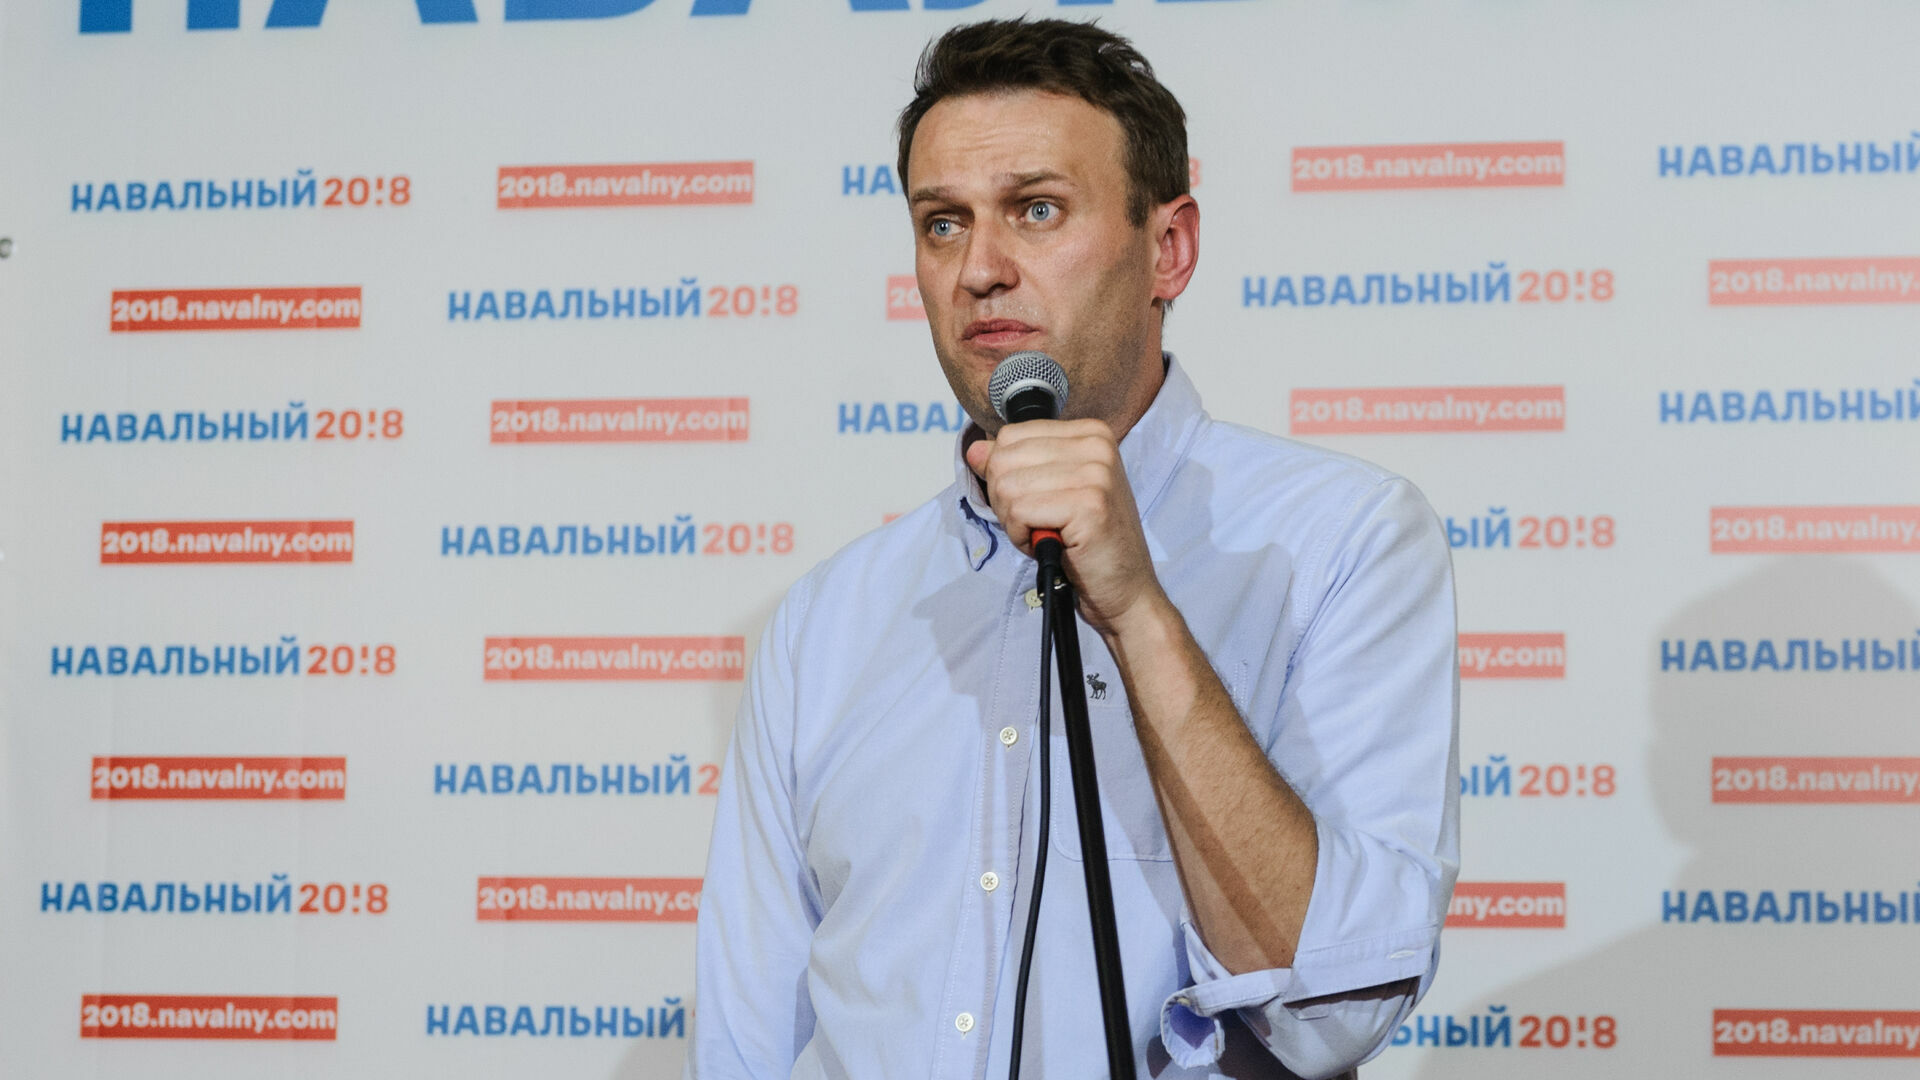 Сторонники Алексея Навального проведут шествие в центре Перми